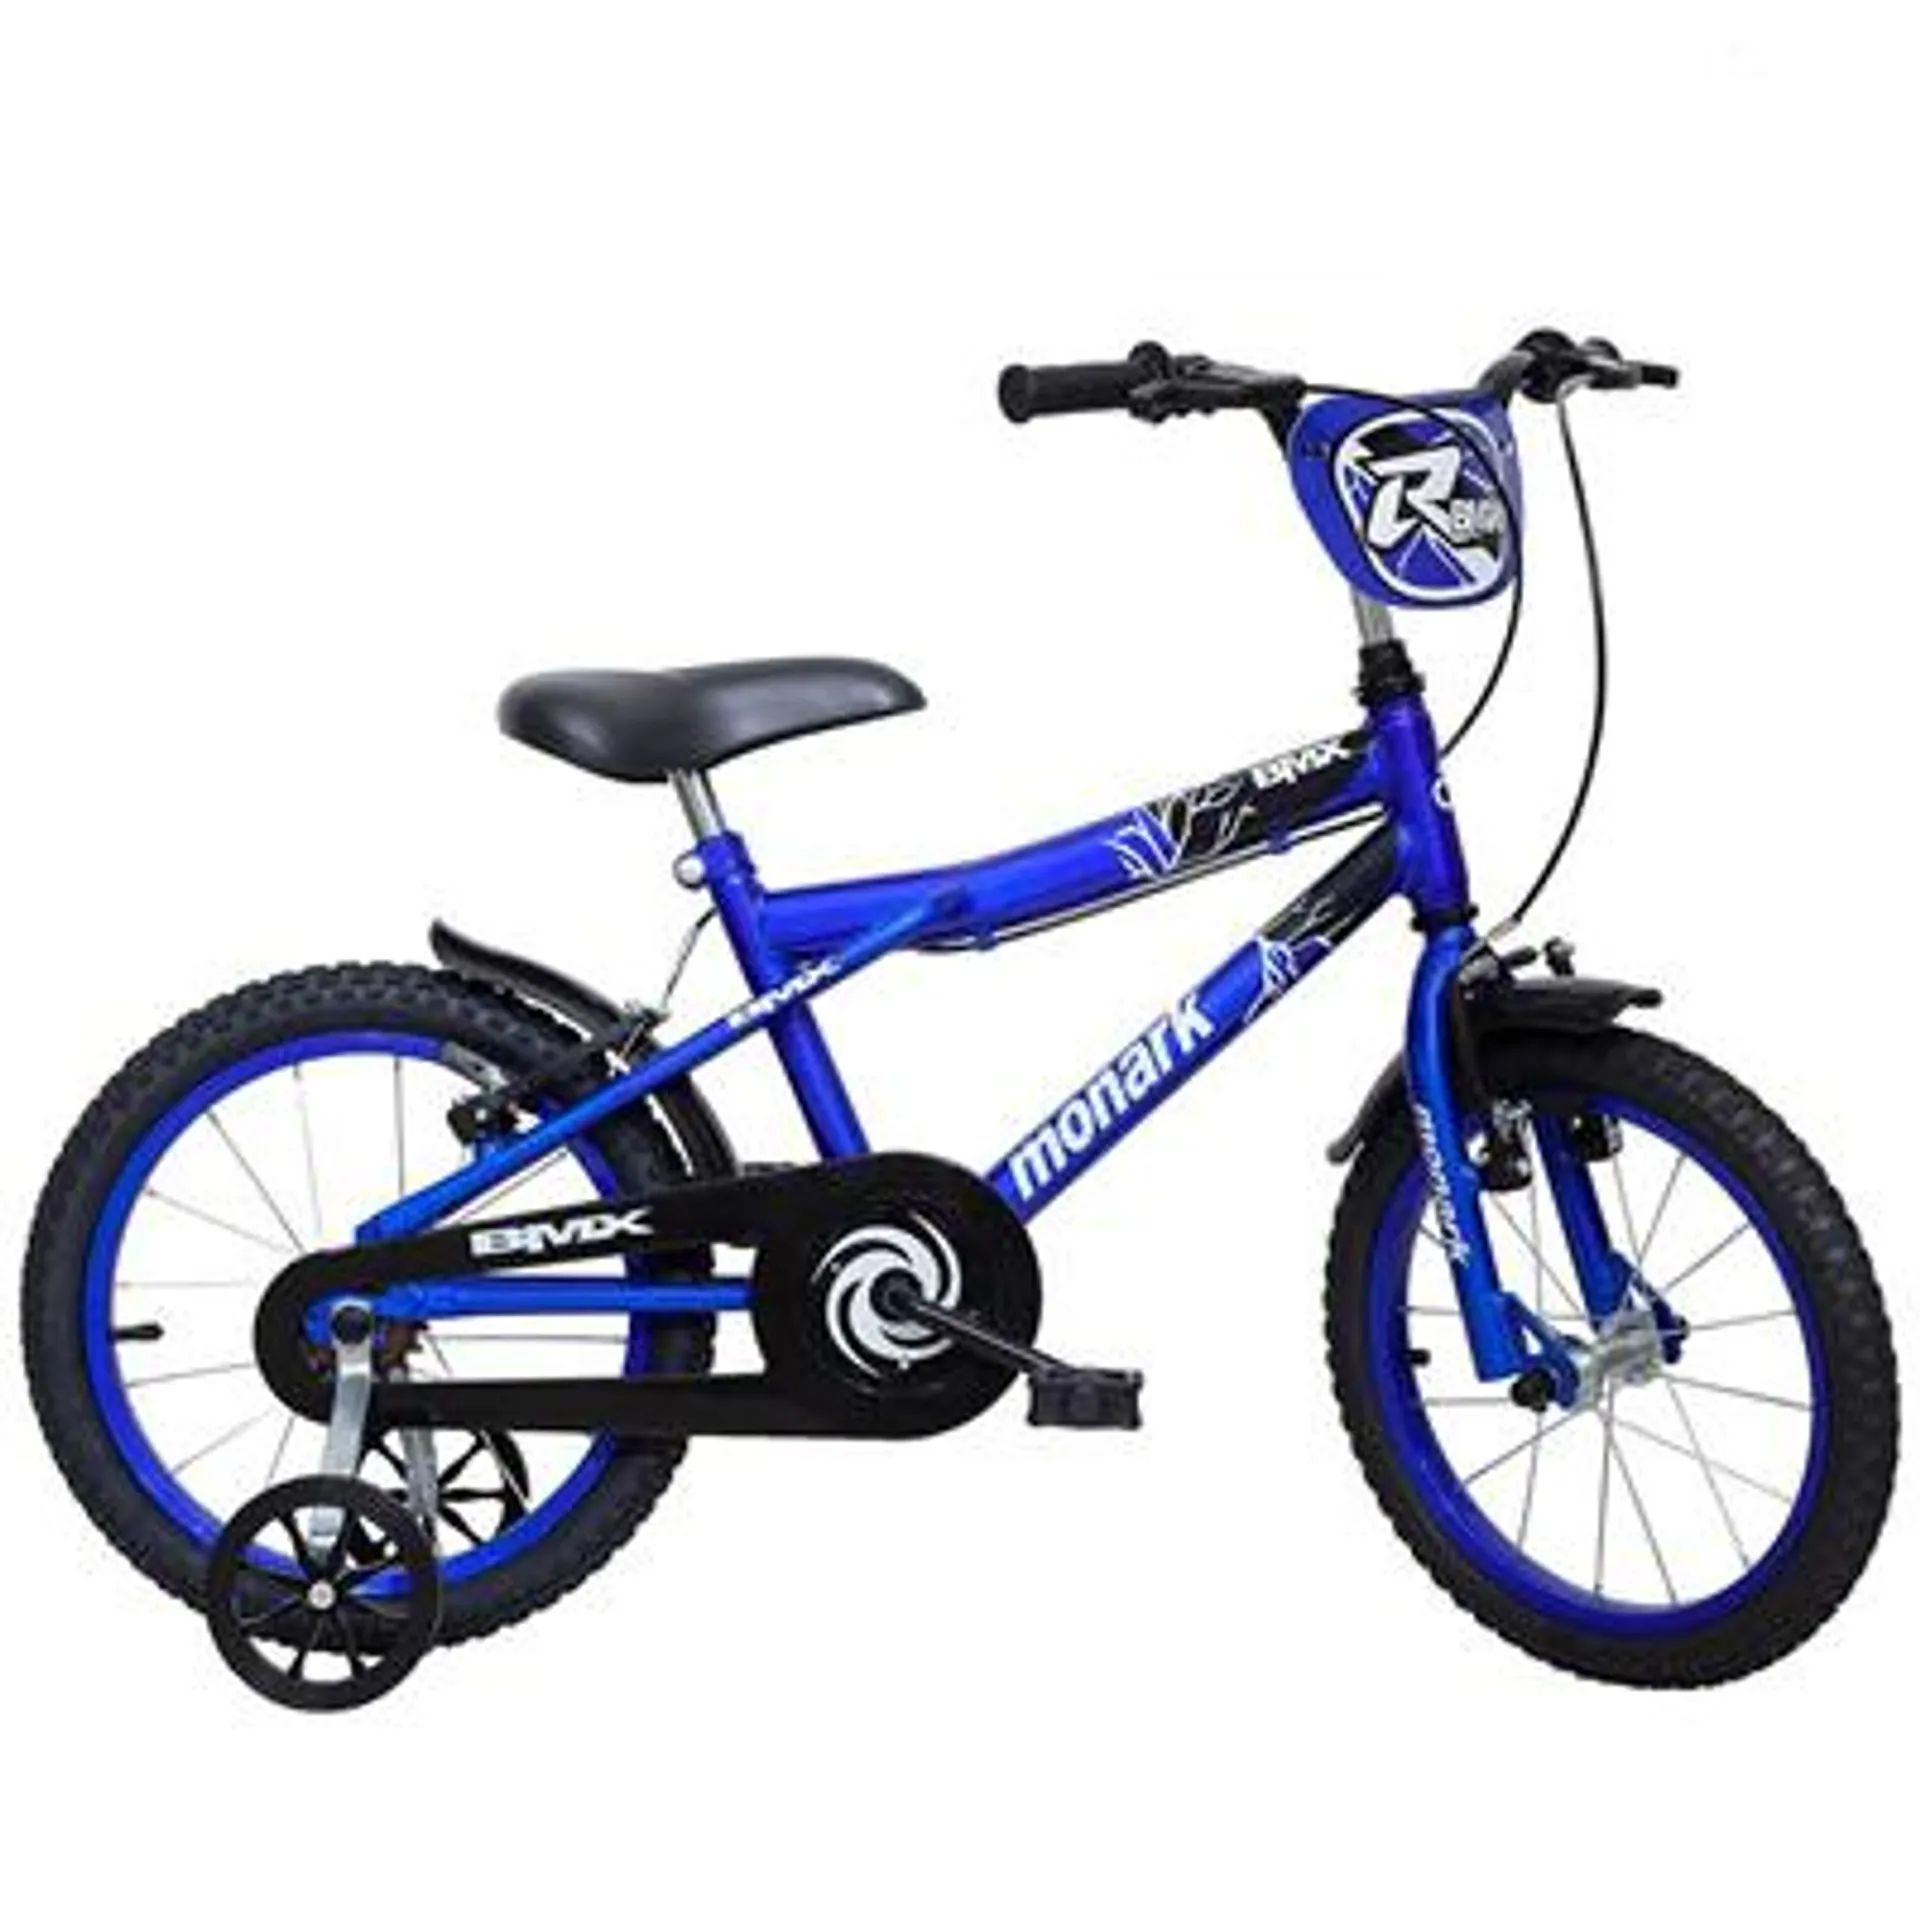 Bicicleta Monark BMX Ranger Infantil Aro 16 Aço Carbono Azul e Preta